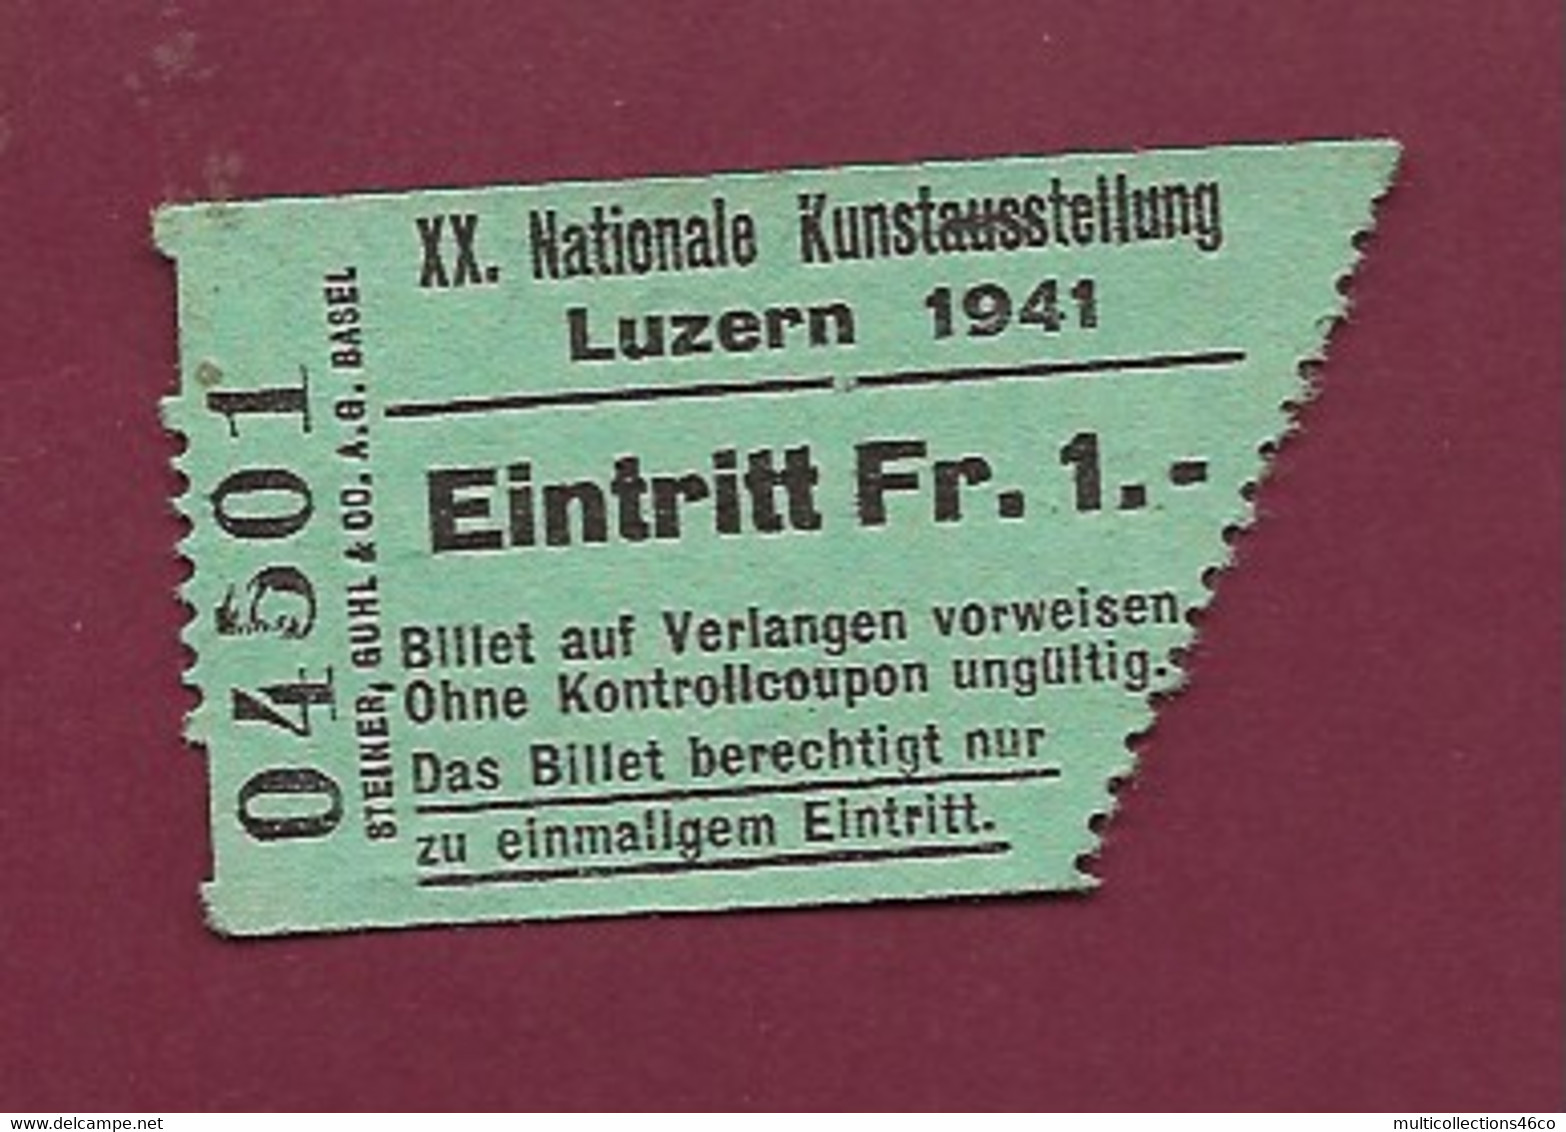 051120 - TICKET TRANSPORT SUISSE - LUZERN 1941 XX Nationale Kunstausstellung Eintritt FR 1 04501 - Mundo